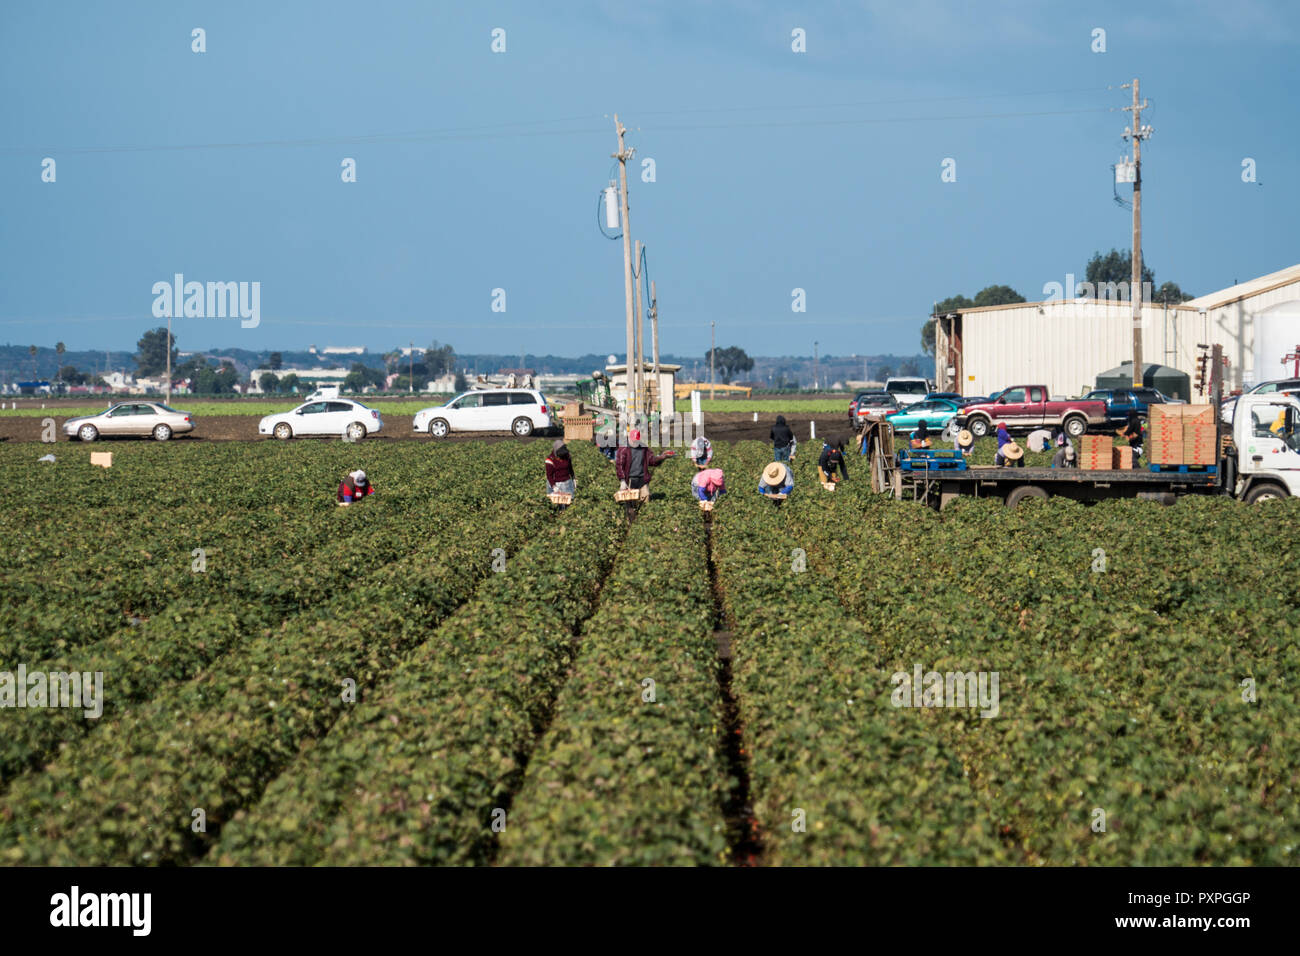 Salinas, Kalifornien - 17. Oktober 2017: Migrant migrant saisonale landwirtschaftliche Arbeitnehmer und Paket Obst und Gemüse arbeiten in den Bereichen der Sali Stockfoto